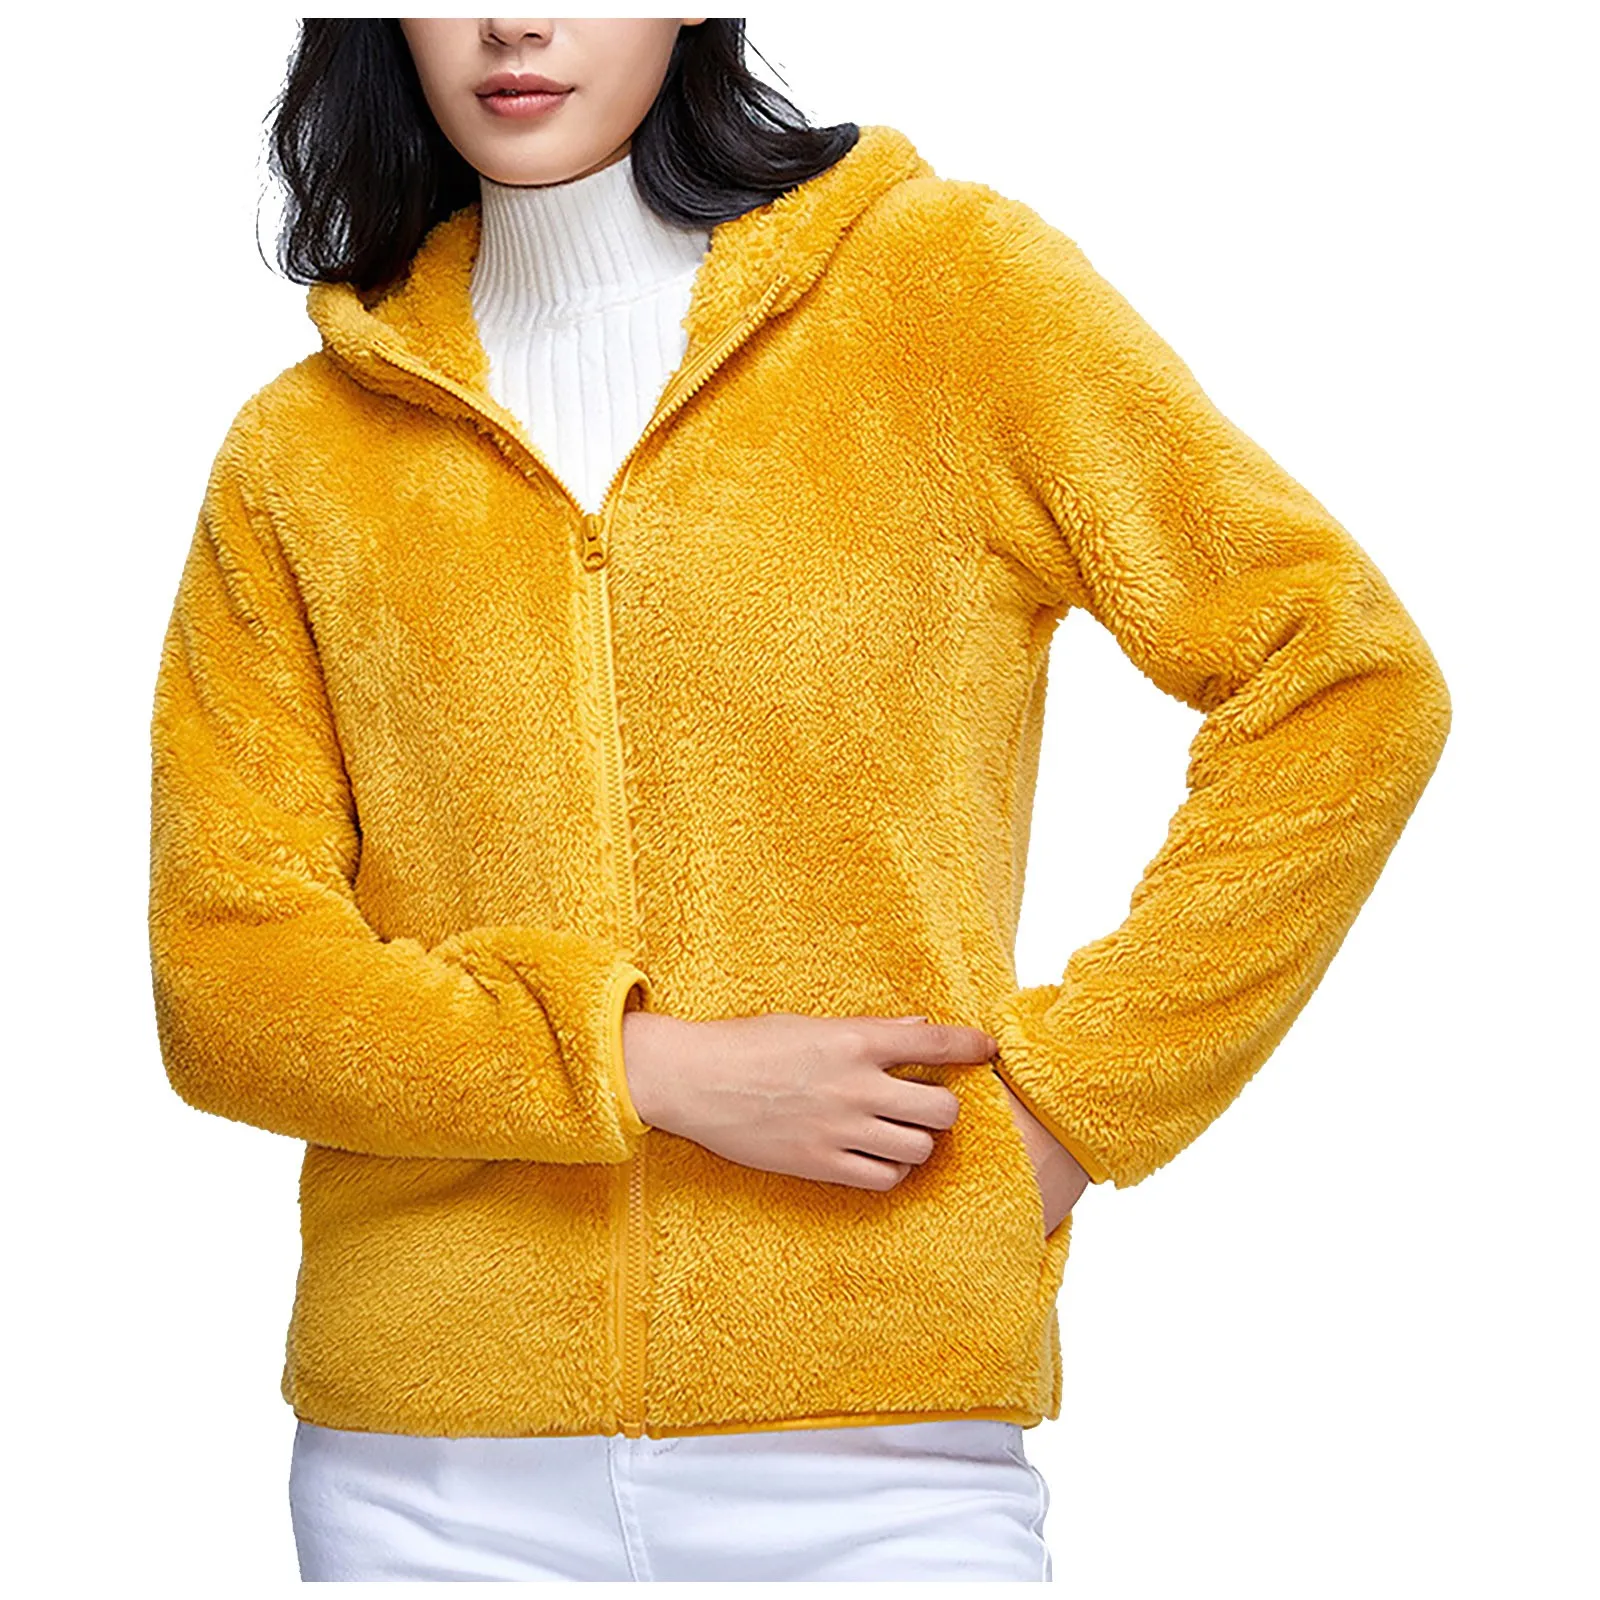 YYear Women Outwear Fall & Winter Faux Fur Plus Size Warm Hoodies Jacket Coat